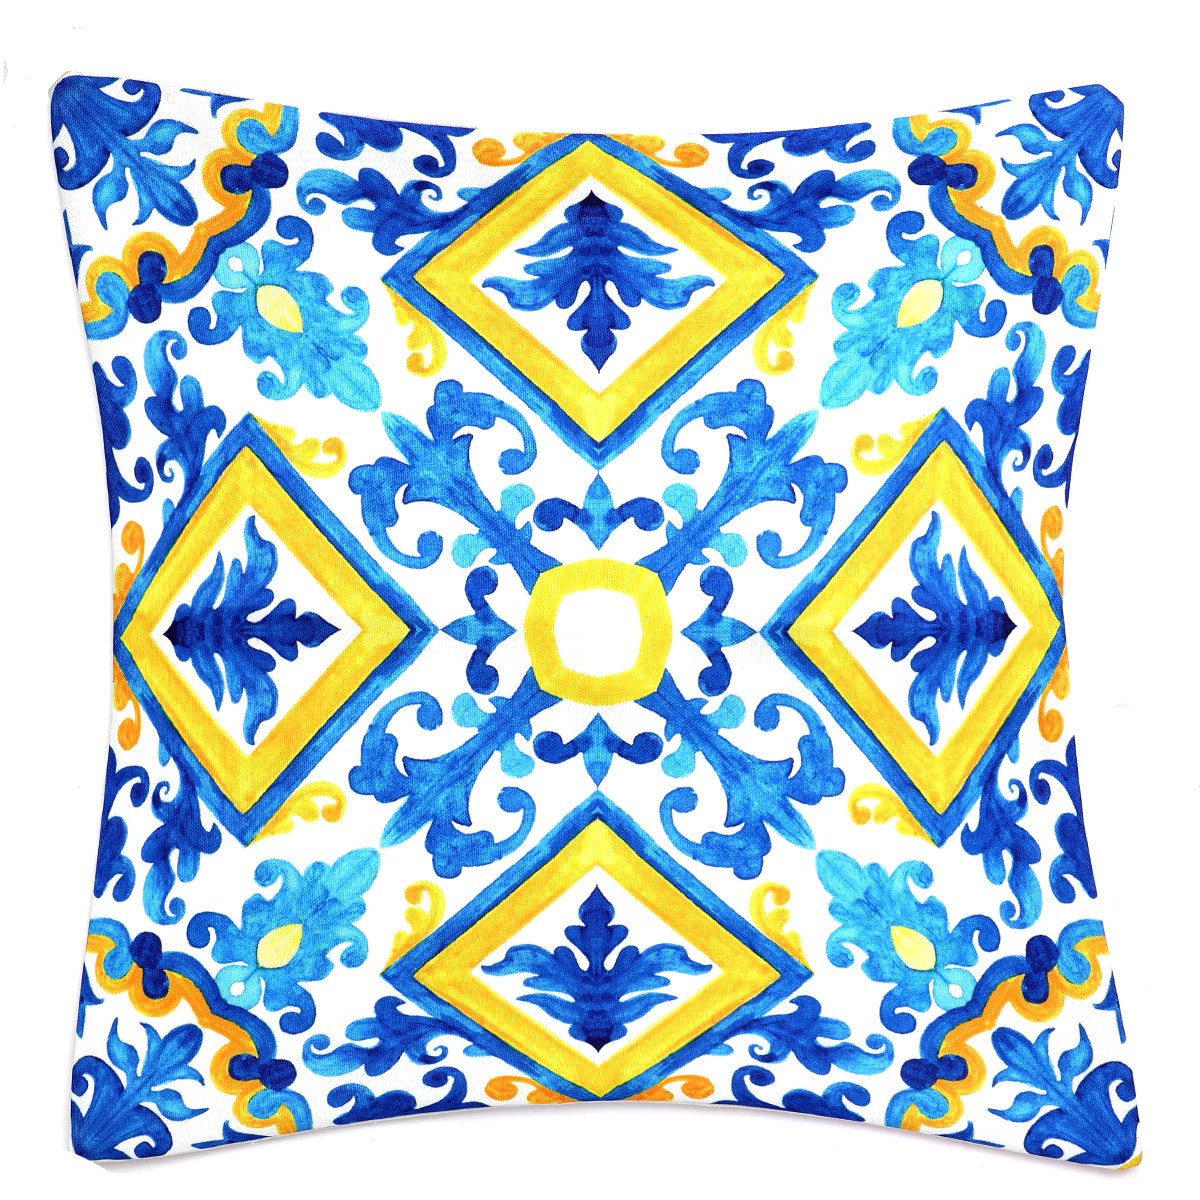 Italia Design Cushion Cover 18x18